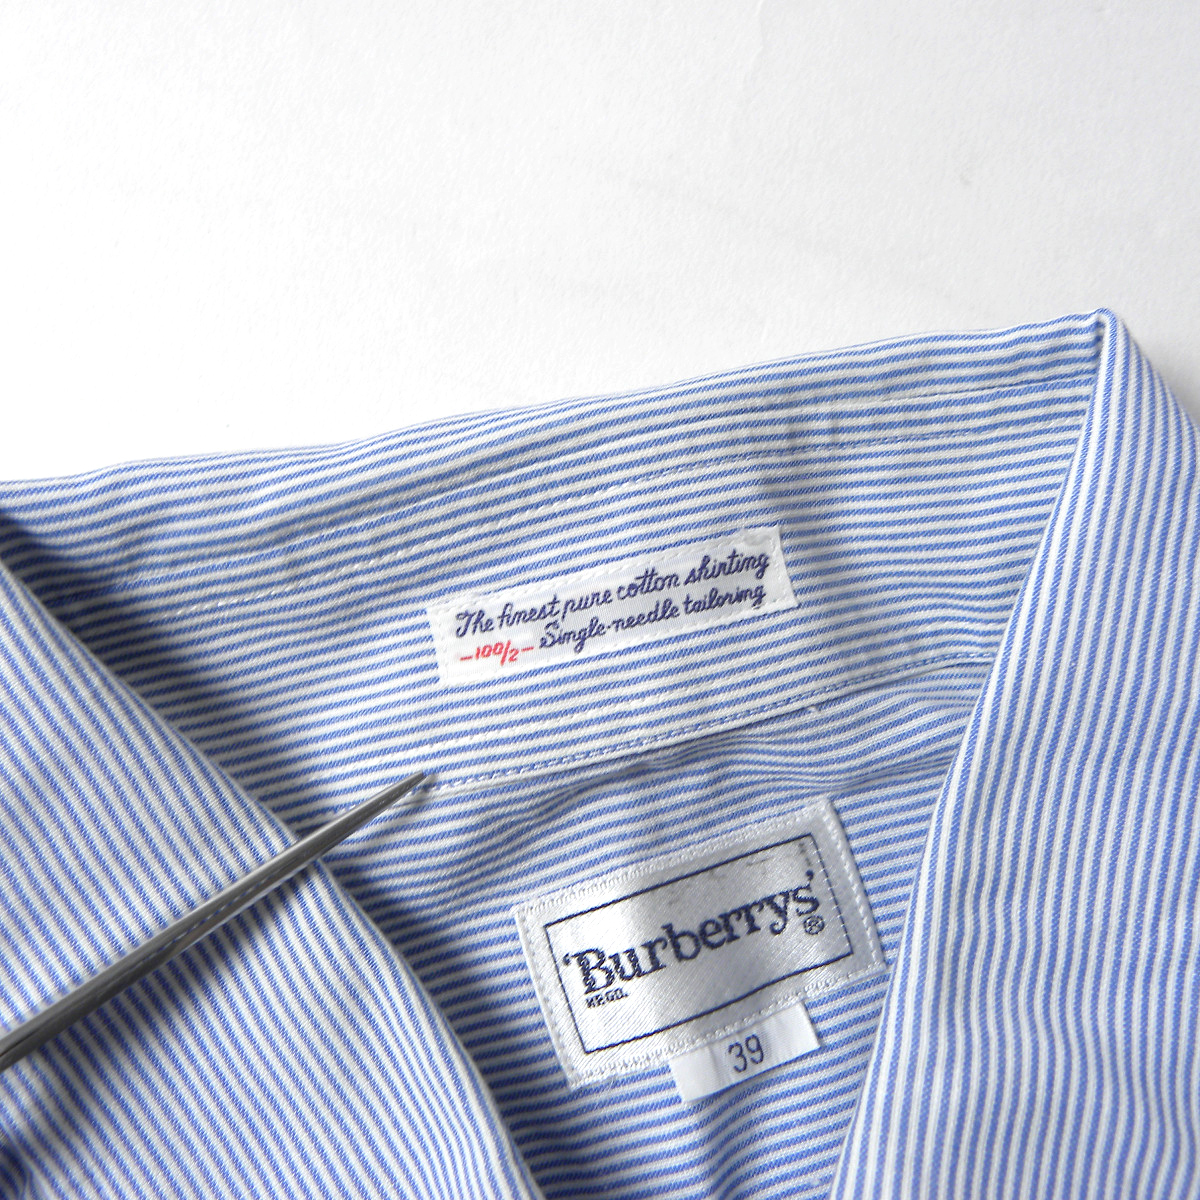 バーバリー Burberrys' コットン100% 最高級シングルニードル製法 ストライプ柄ドレスシャツ 半袖 39 ブルー 三陽商会 日本製 m0328-8の画像8